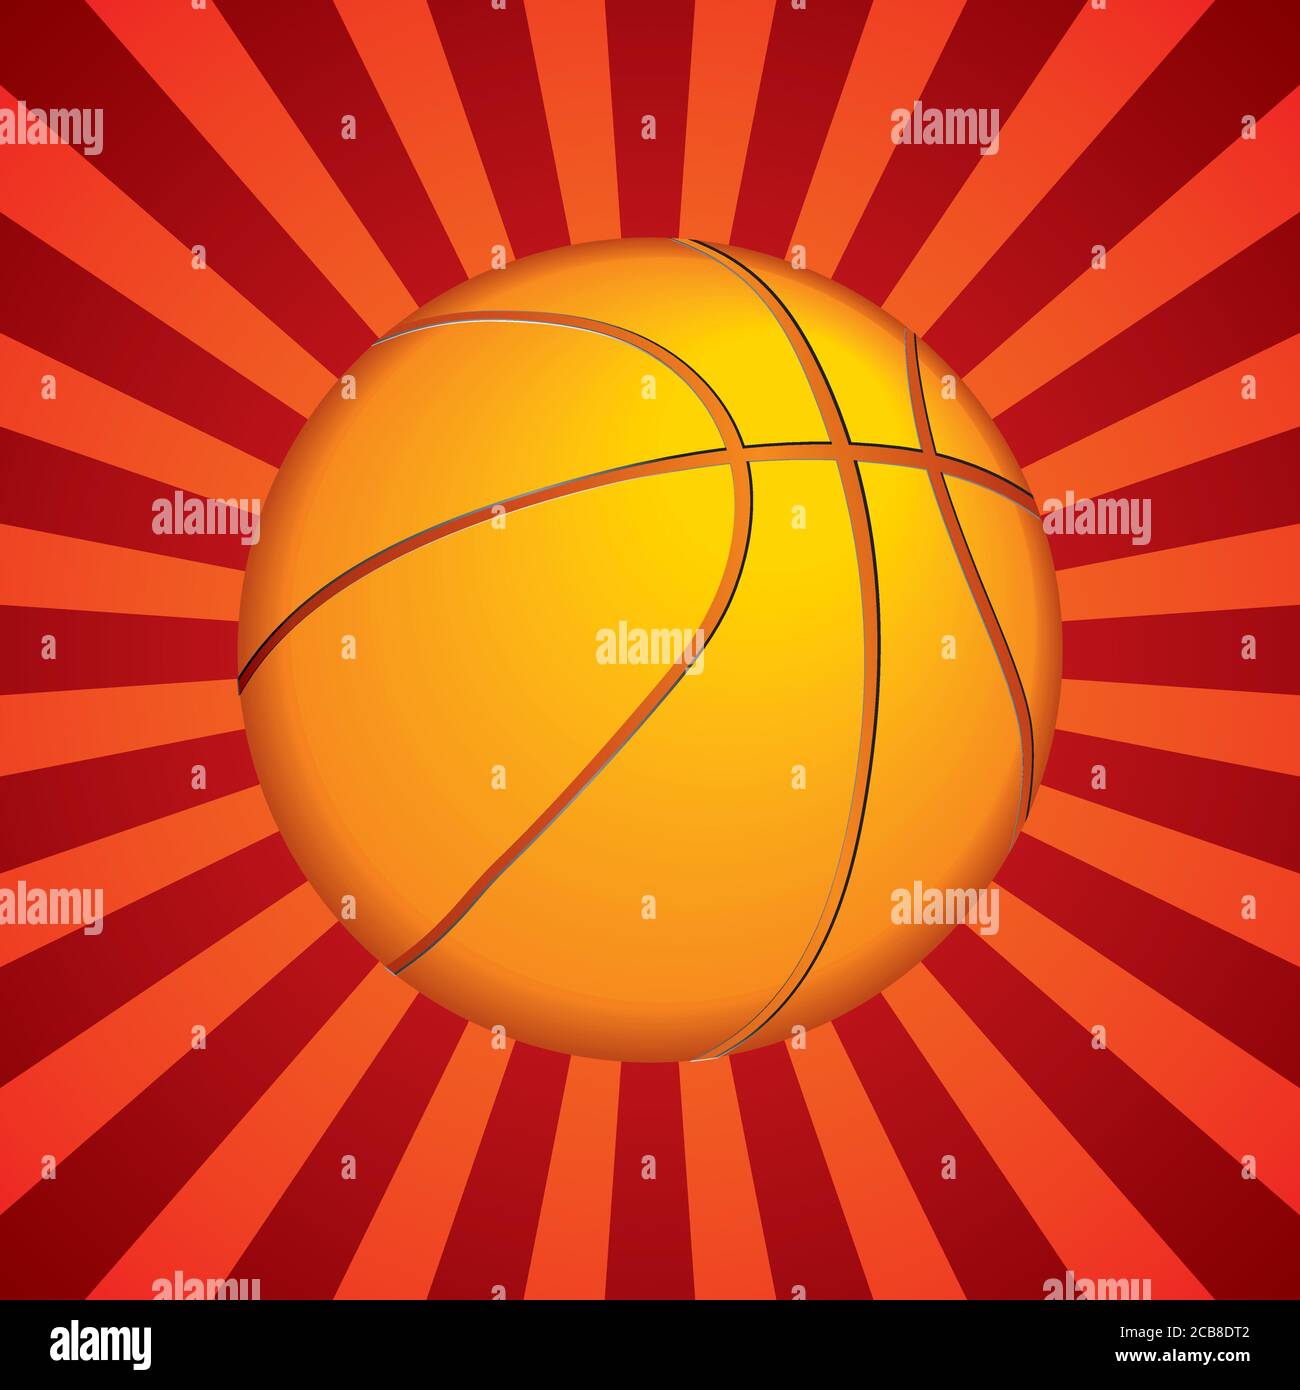 Palla di basket. Come simbolo di sport e fitness di una squadra di attività di svago giocando con una palla di pelle dribbling e passando in torneo di gara Illustrazione Vettoriale